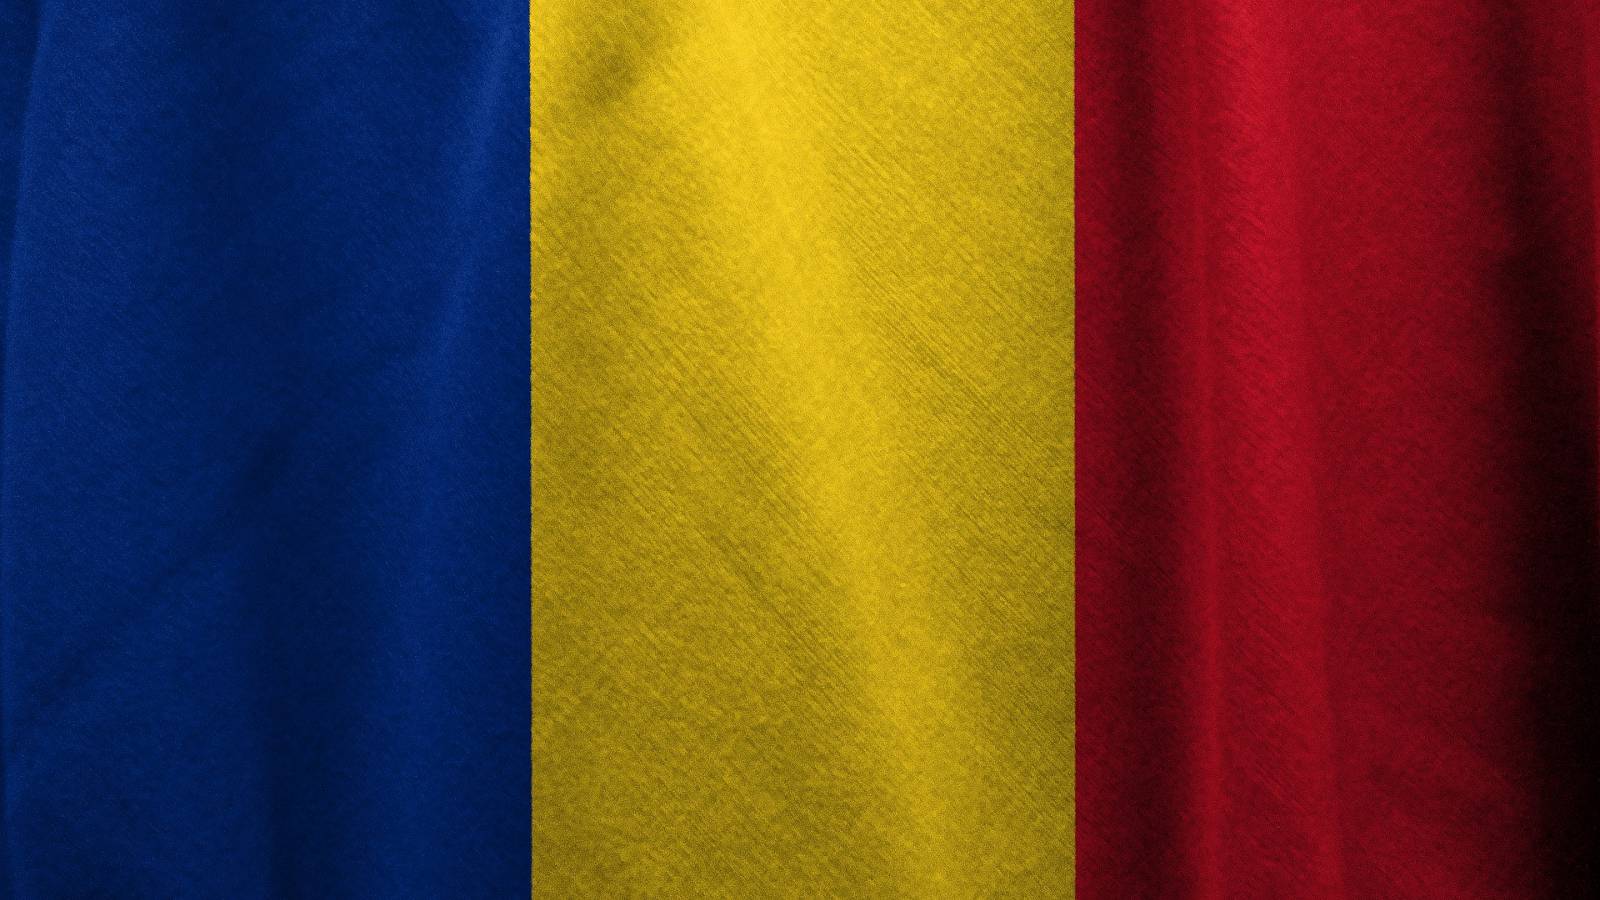 Taux d'incidence du COVID-19 dans les comtés de Roumanie 17 janvier 2022